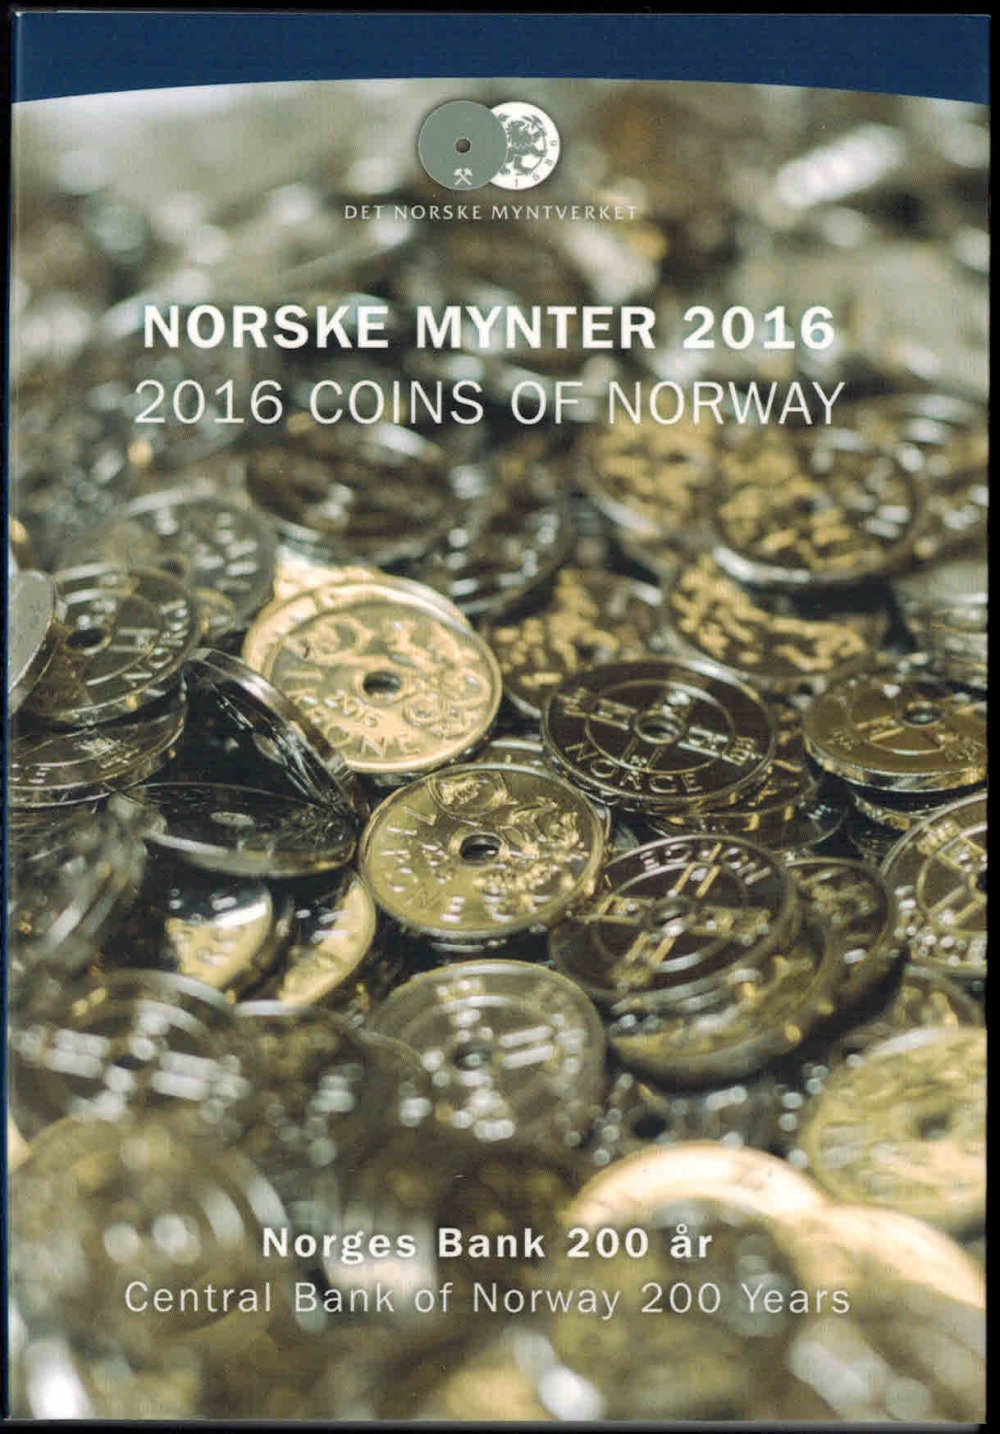 Settet inneholder årets 20-krone som Norges Bank utgir i forbindelse med markeringen av 200 års jubileet for Norges Bank i 2016.
I tillegg inneholder settet 1 krone og års medalje 2016.
Opplag: Max 12.000.
